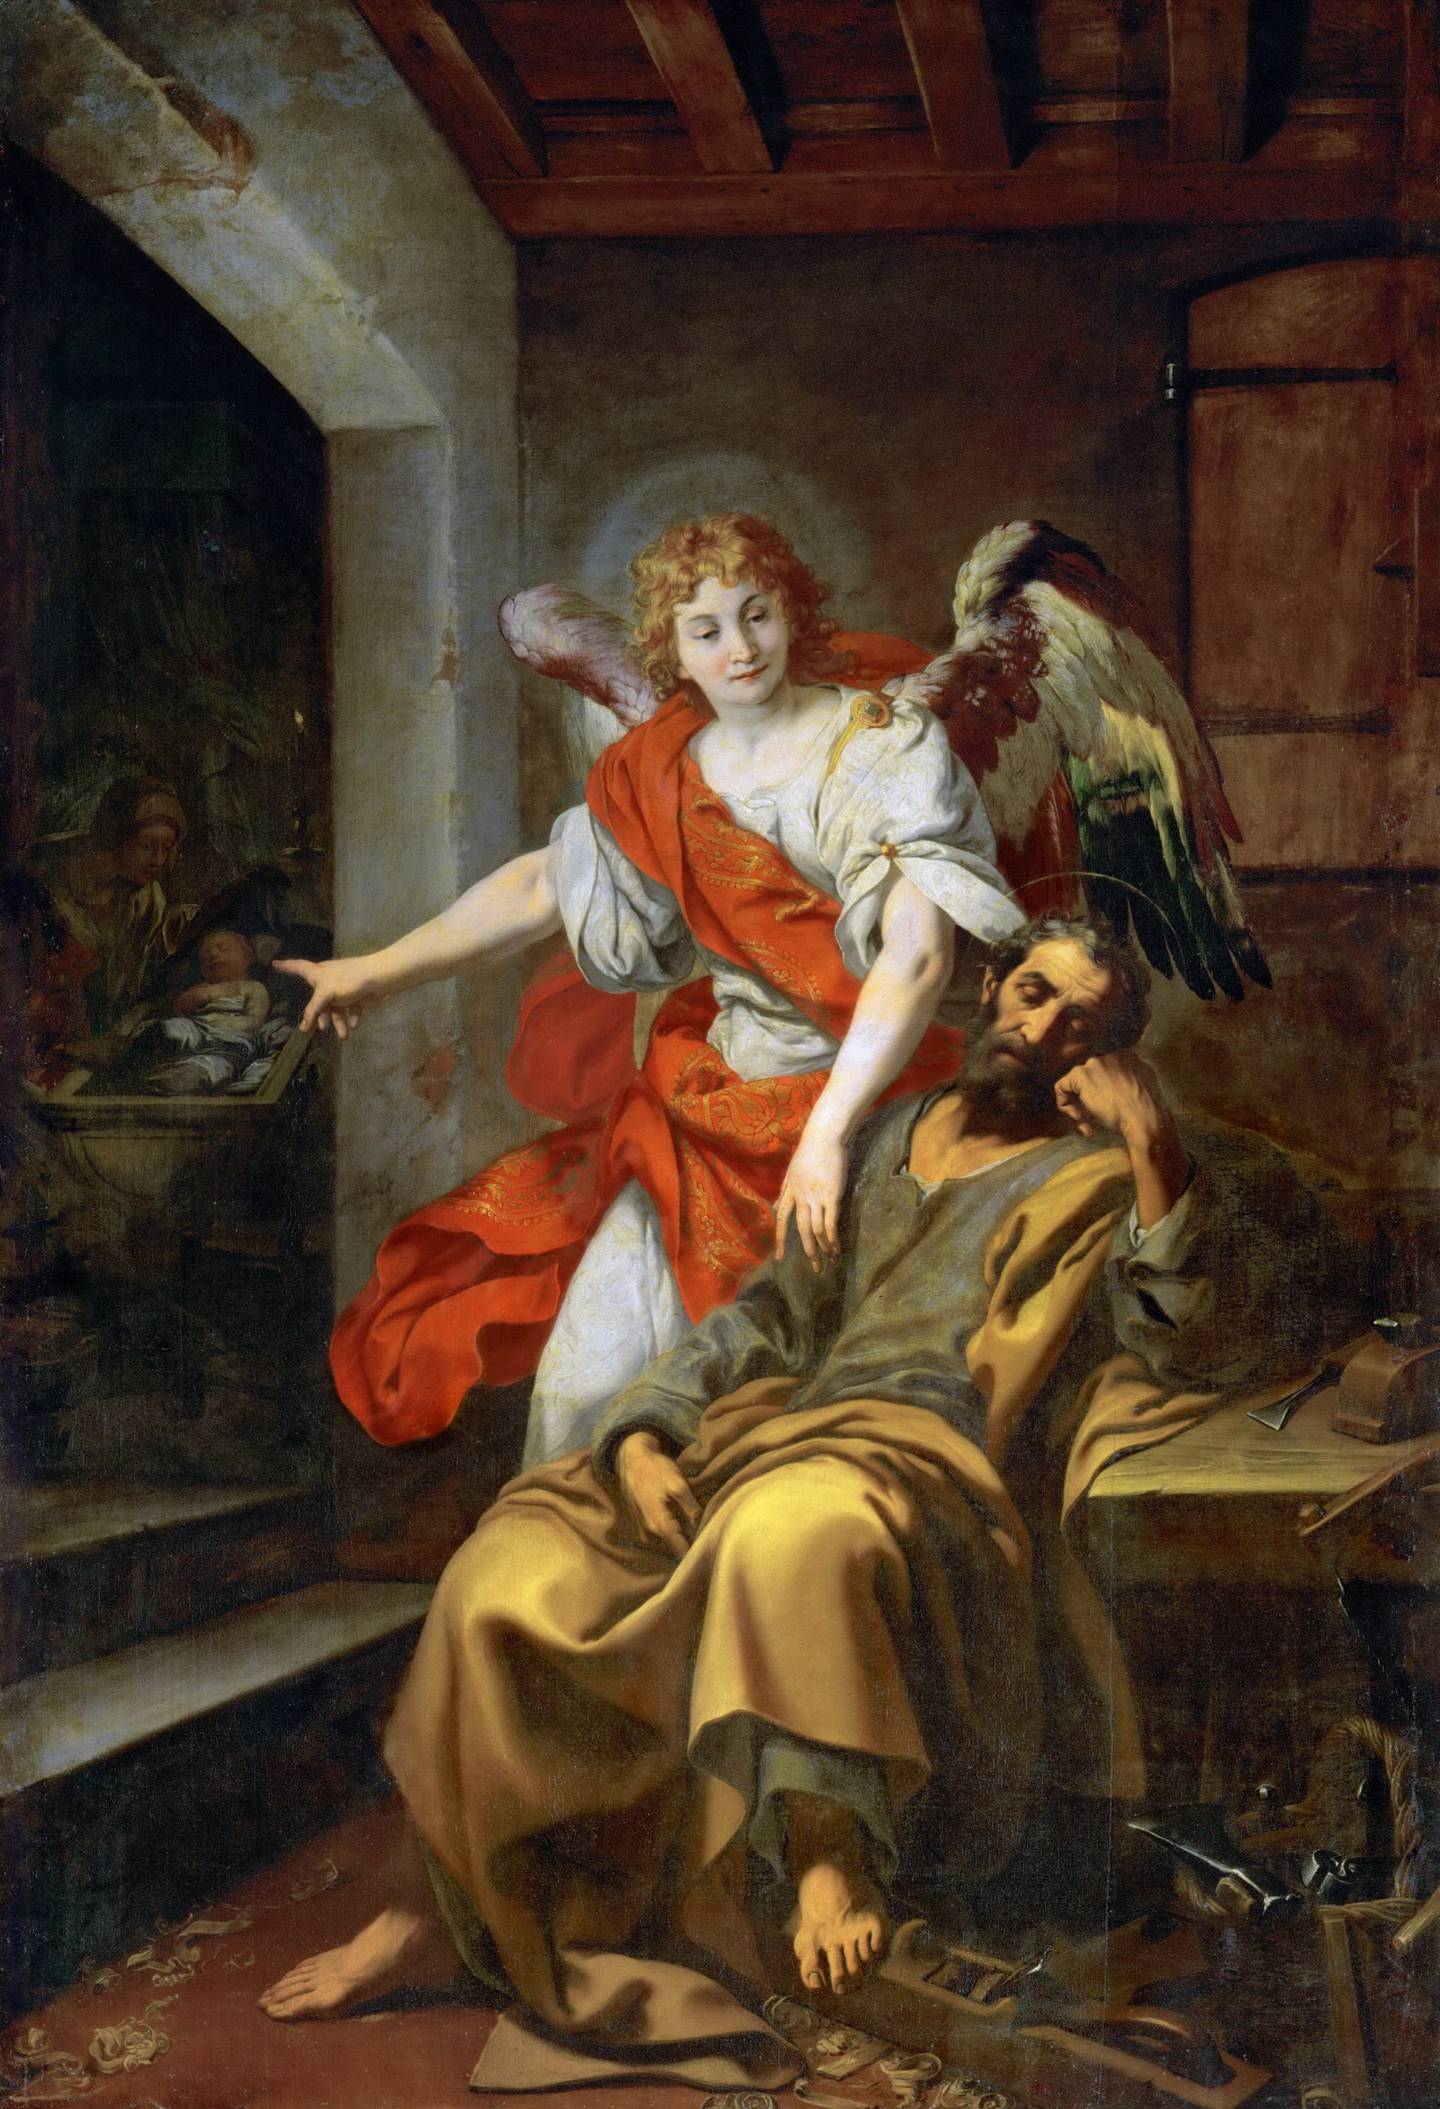 Daniele Crespi, ca 1625: Dream of flight - Josef får en drøm om å flykte fra Egypt